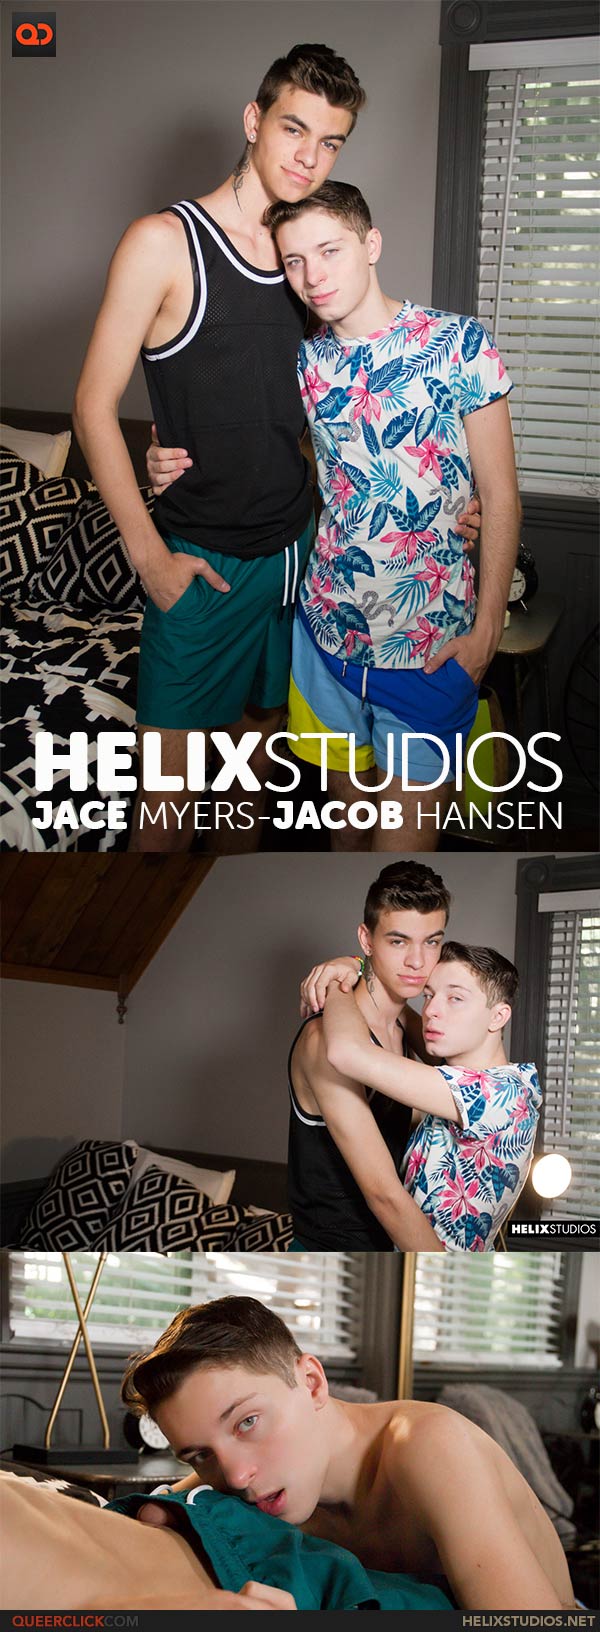 Helix Studios: Jace Myers and Jacob Hansen